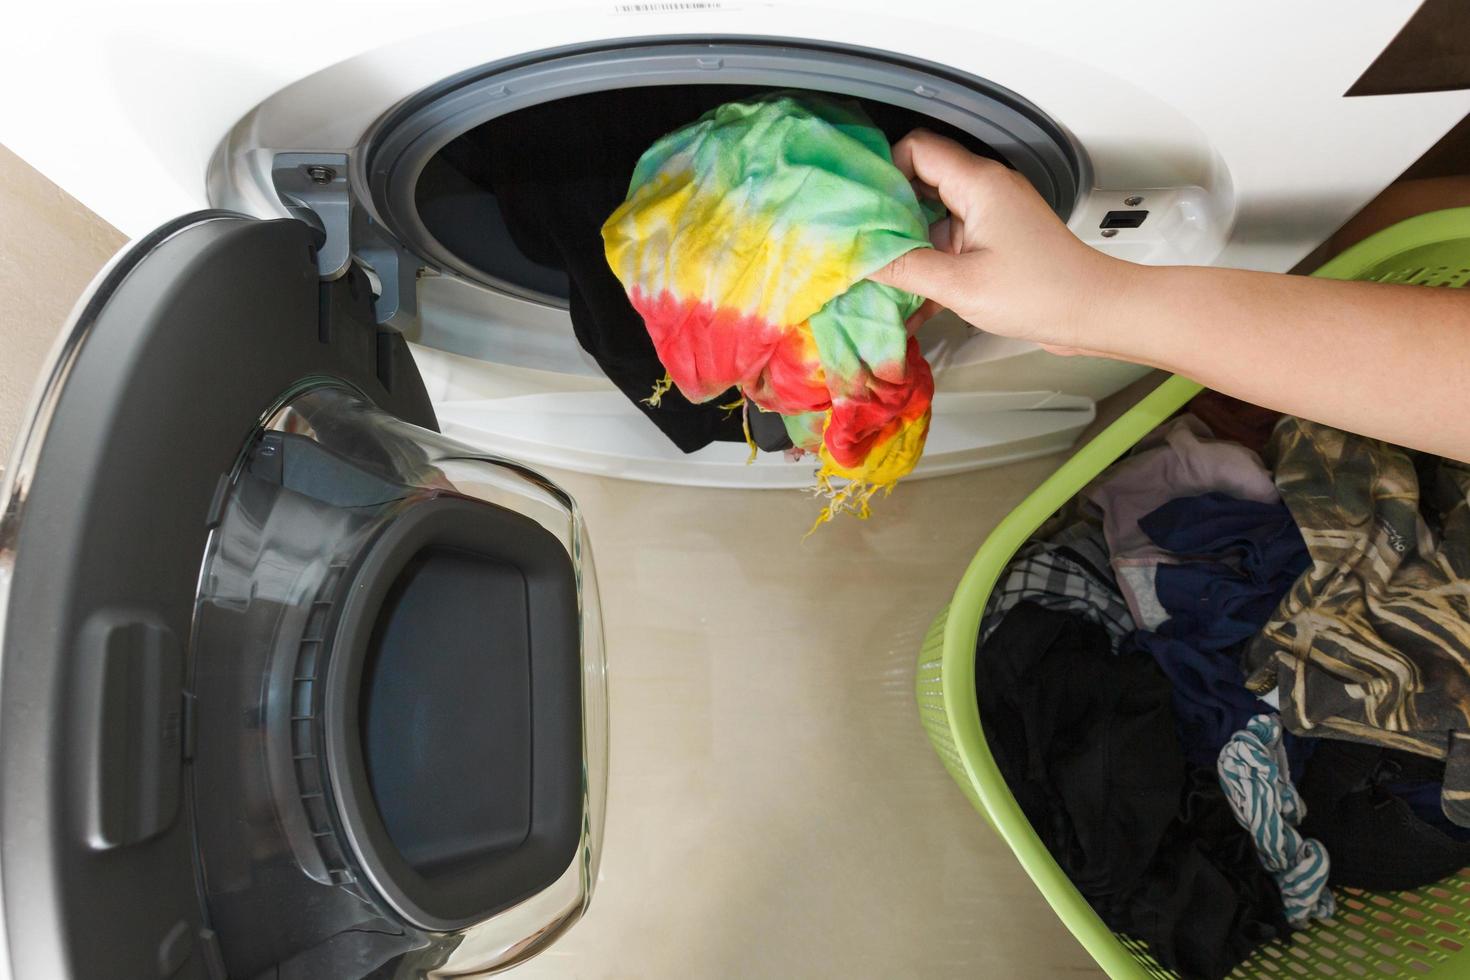 vista superior da mão de uma mulher colocando roupas sujas na máquina de lavar. foto